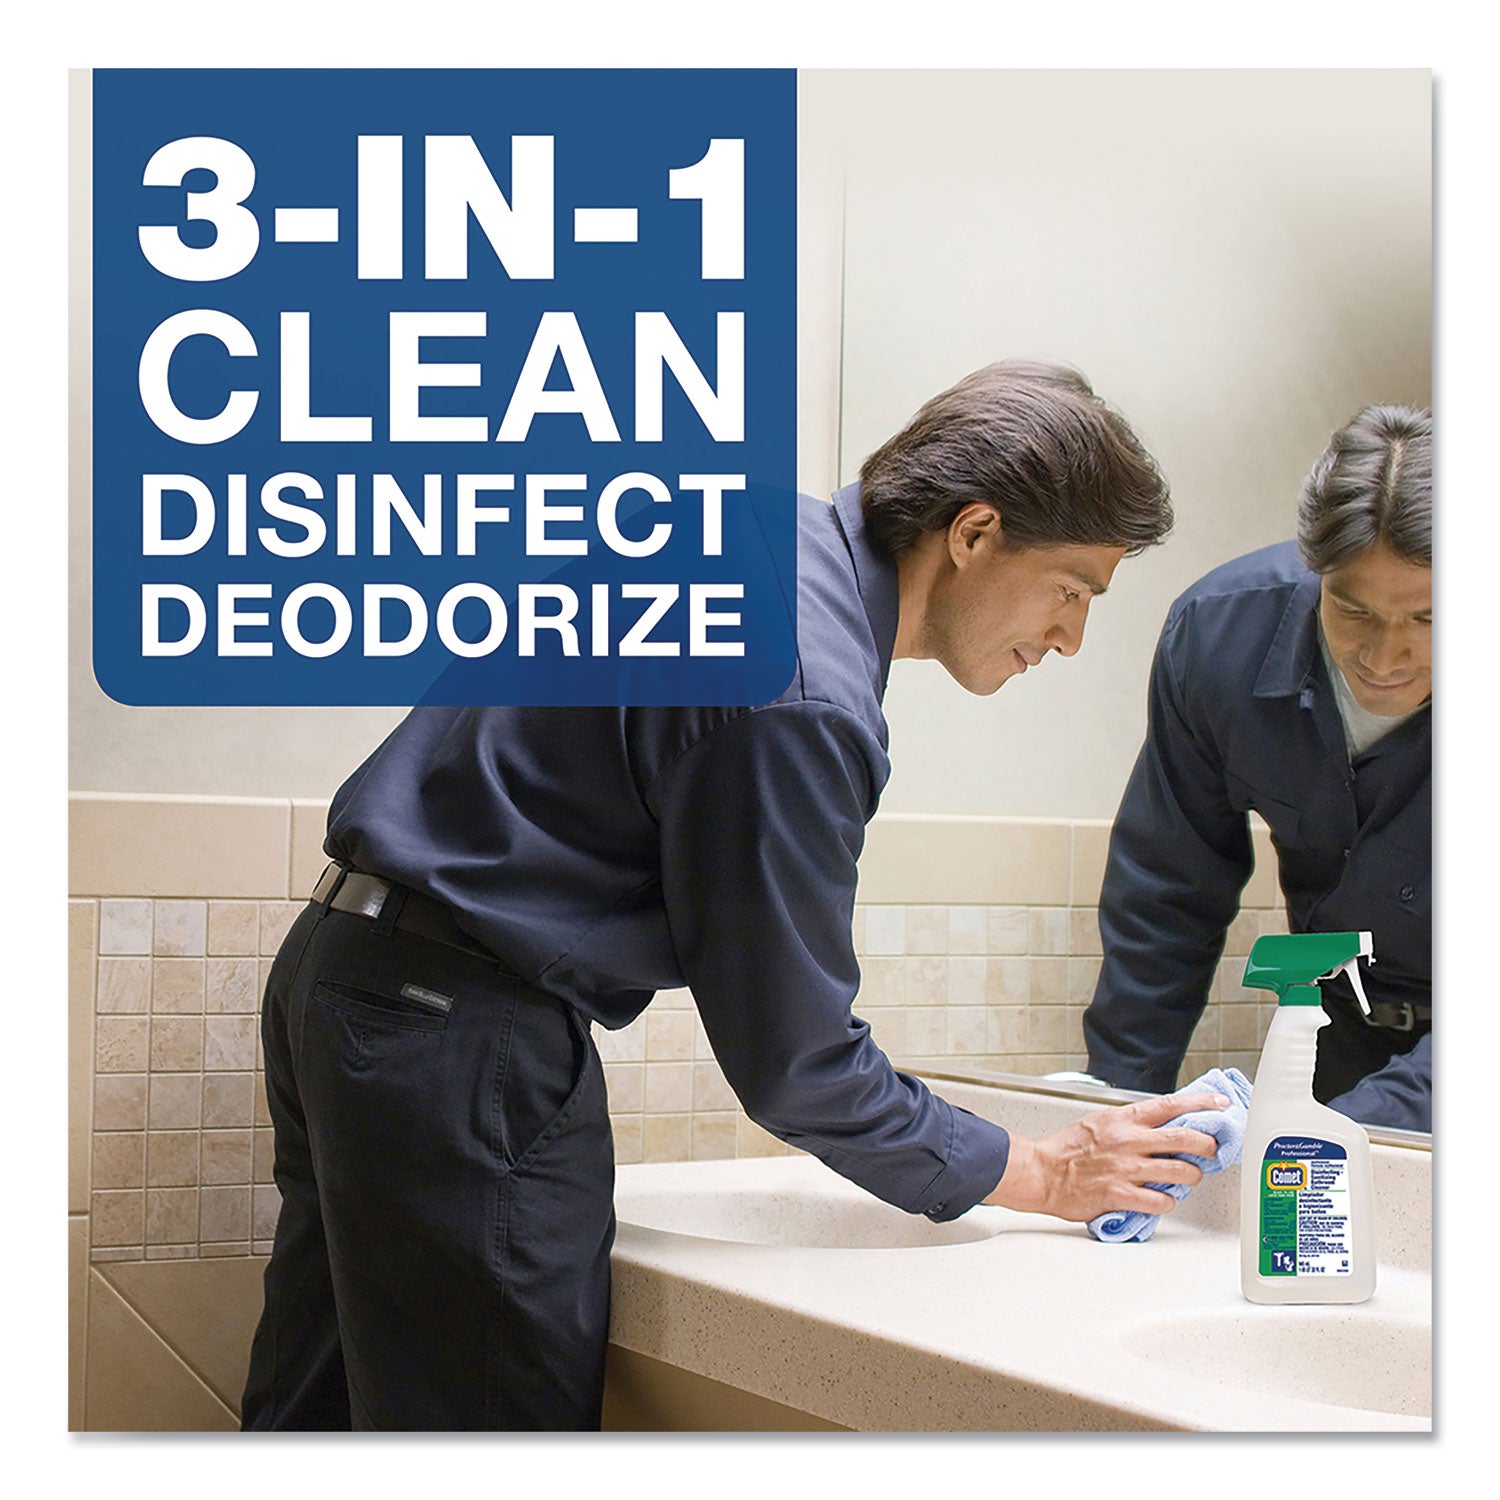 disinfecting-sanitizing-bathroom-cleaner-32-oz-trigger-spray-bottle_pgc19214ea - 6